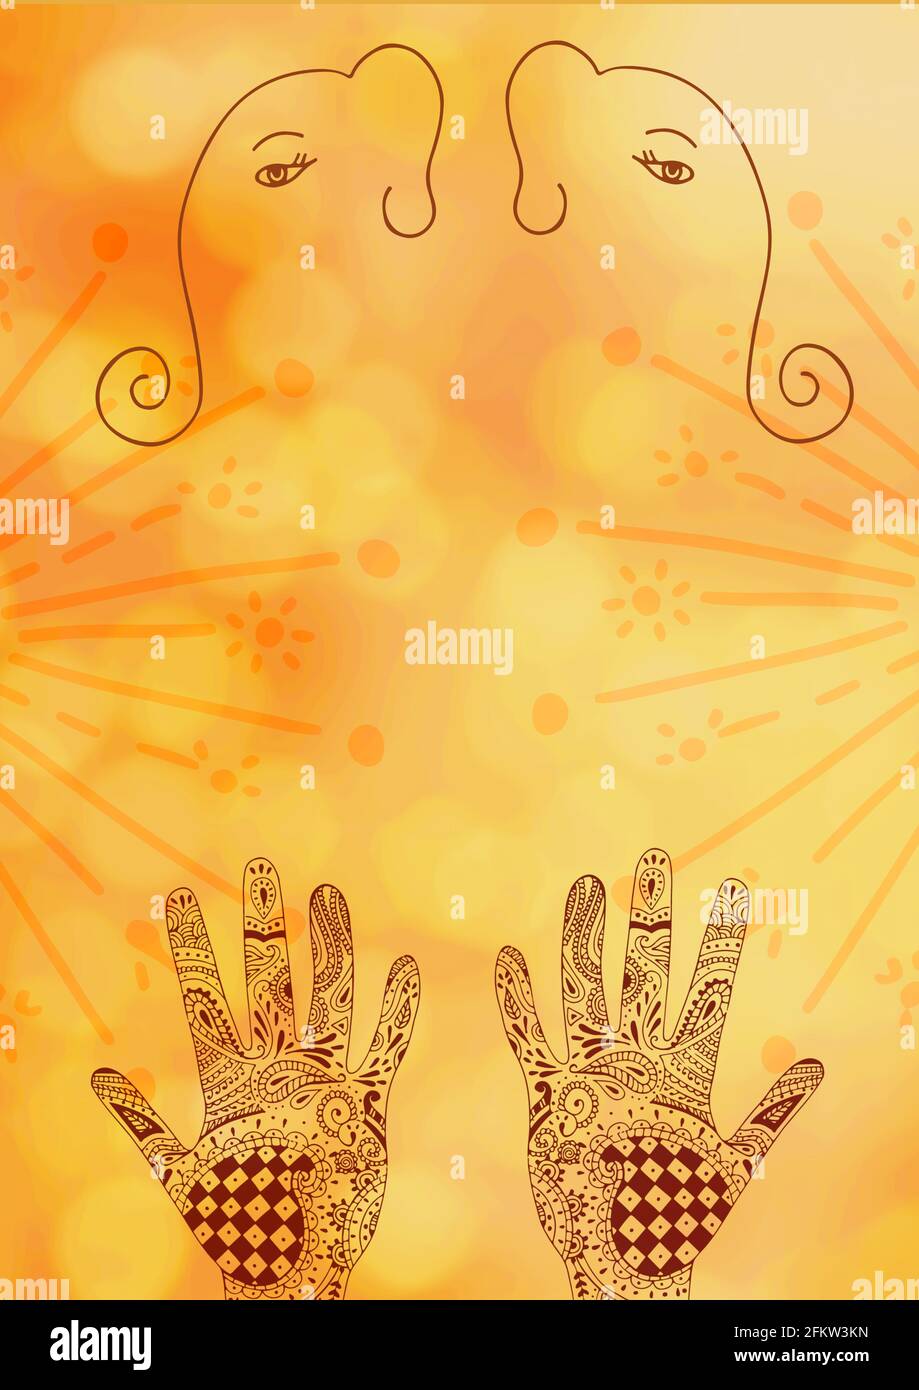 Composizione di mani tatuate di hennè e disegni di testa di elefante sopra sfondo giallo nuvoloso Foto Stock